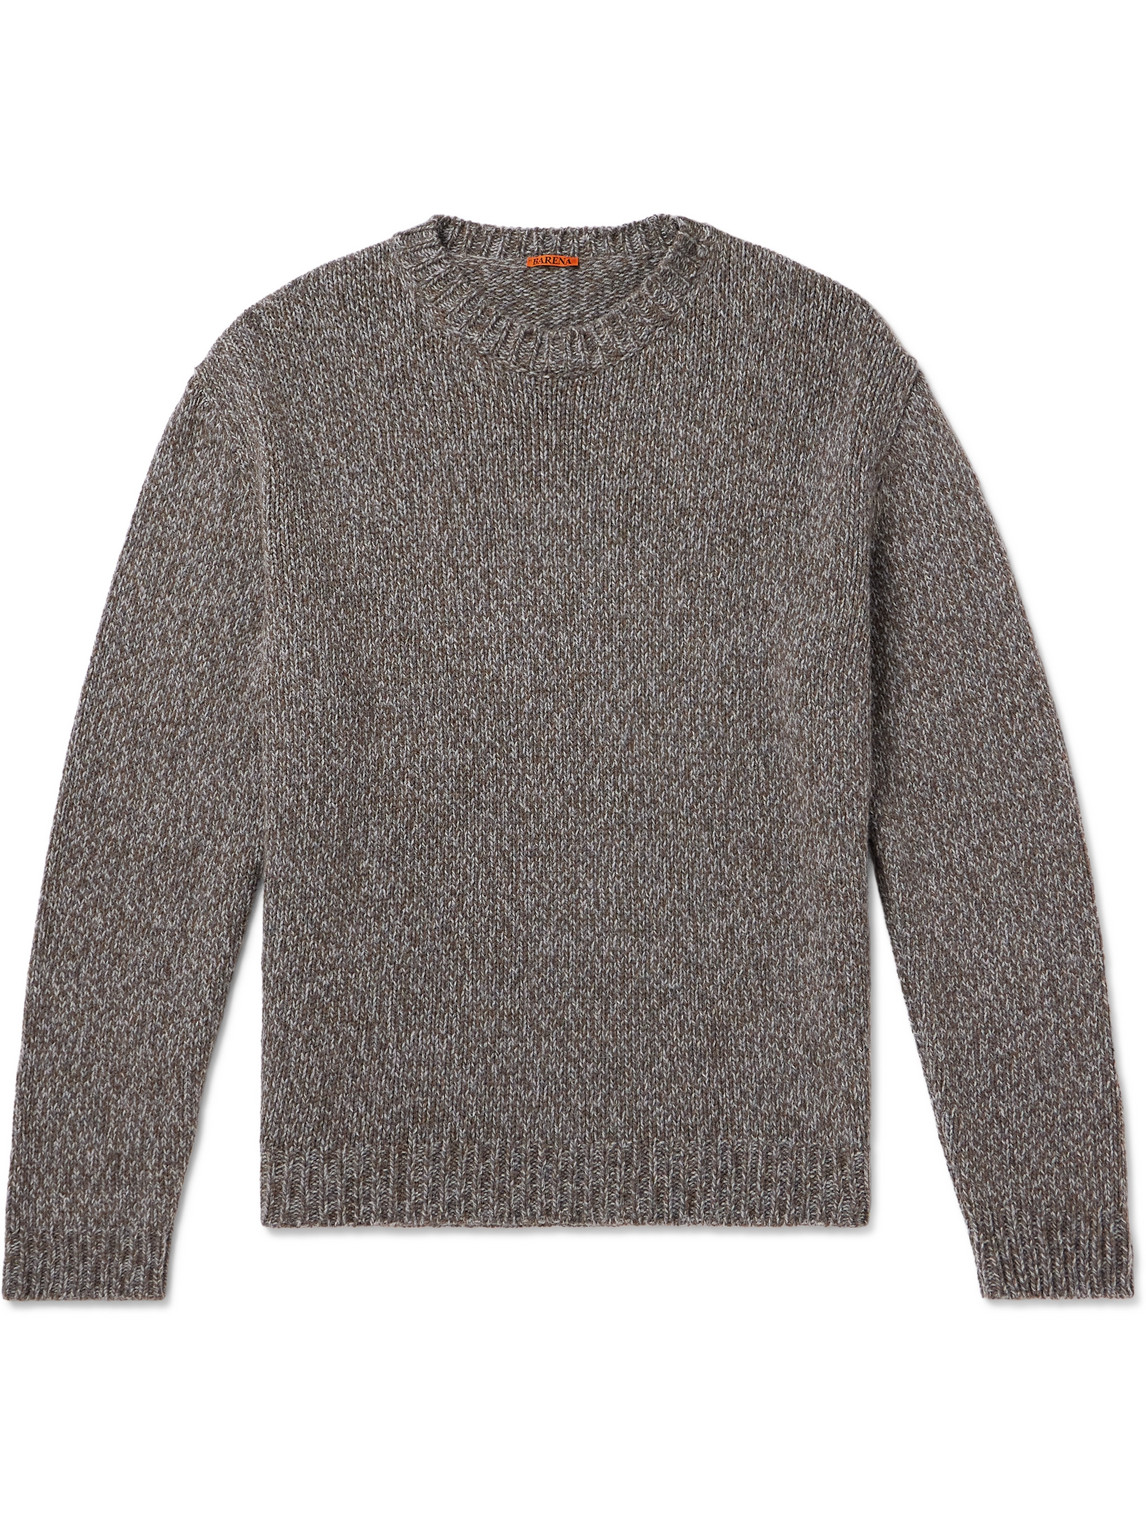 Barena Venezia Alpaca And Merino Wool-blend Sweater In Gray